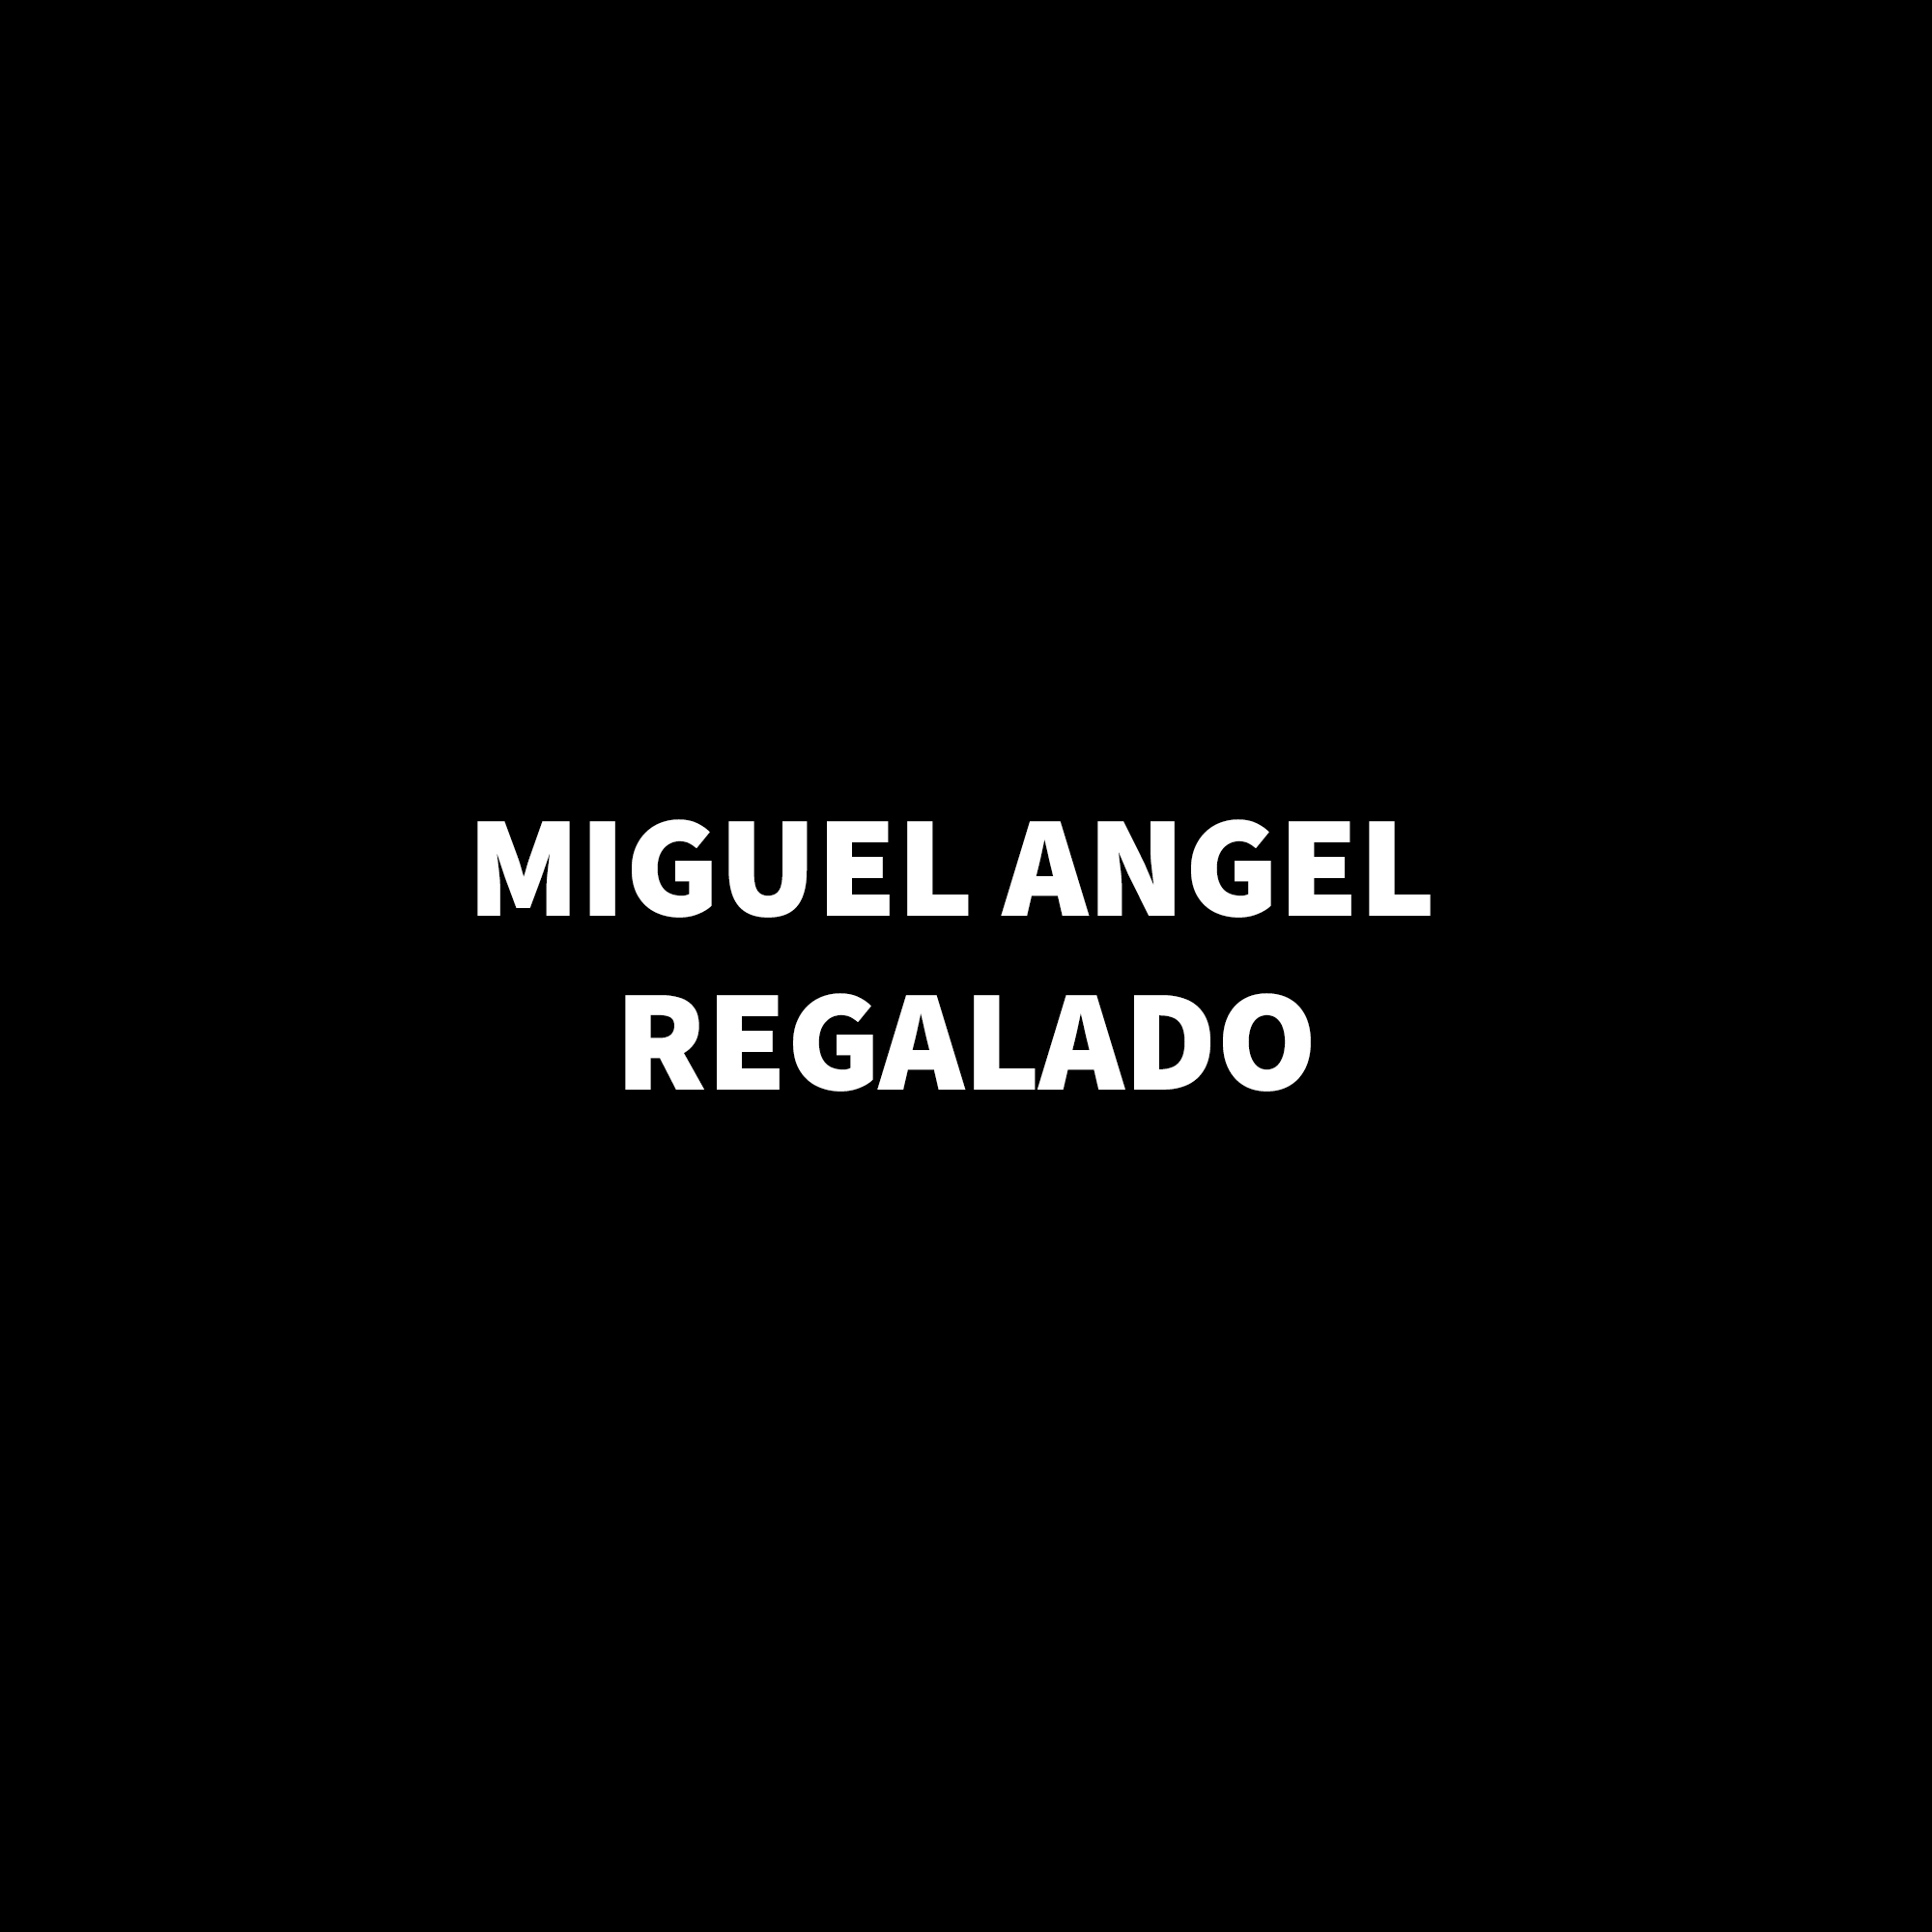 Miguel Angel Regalado